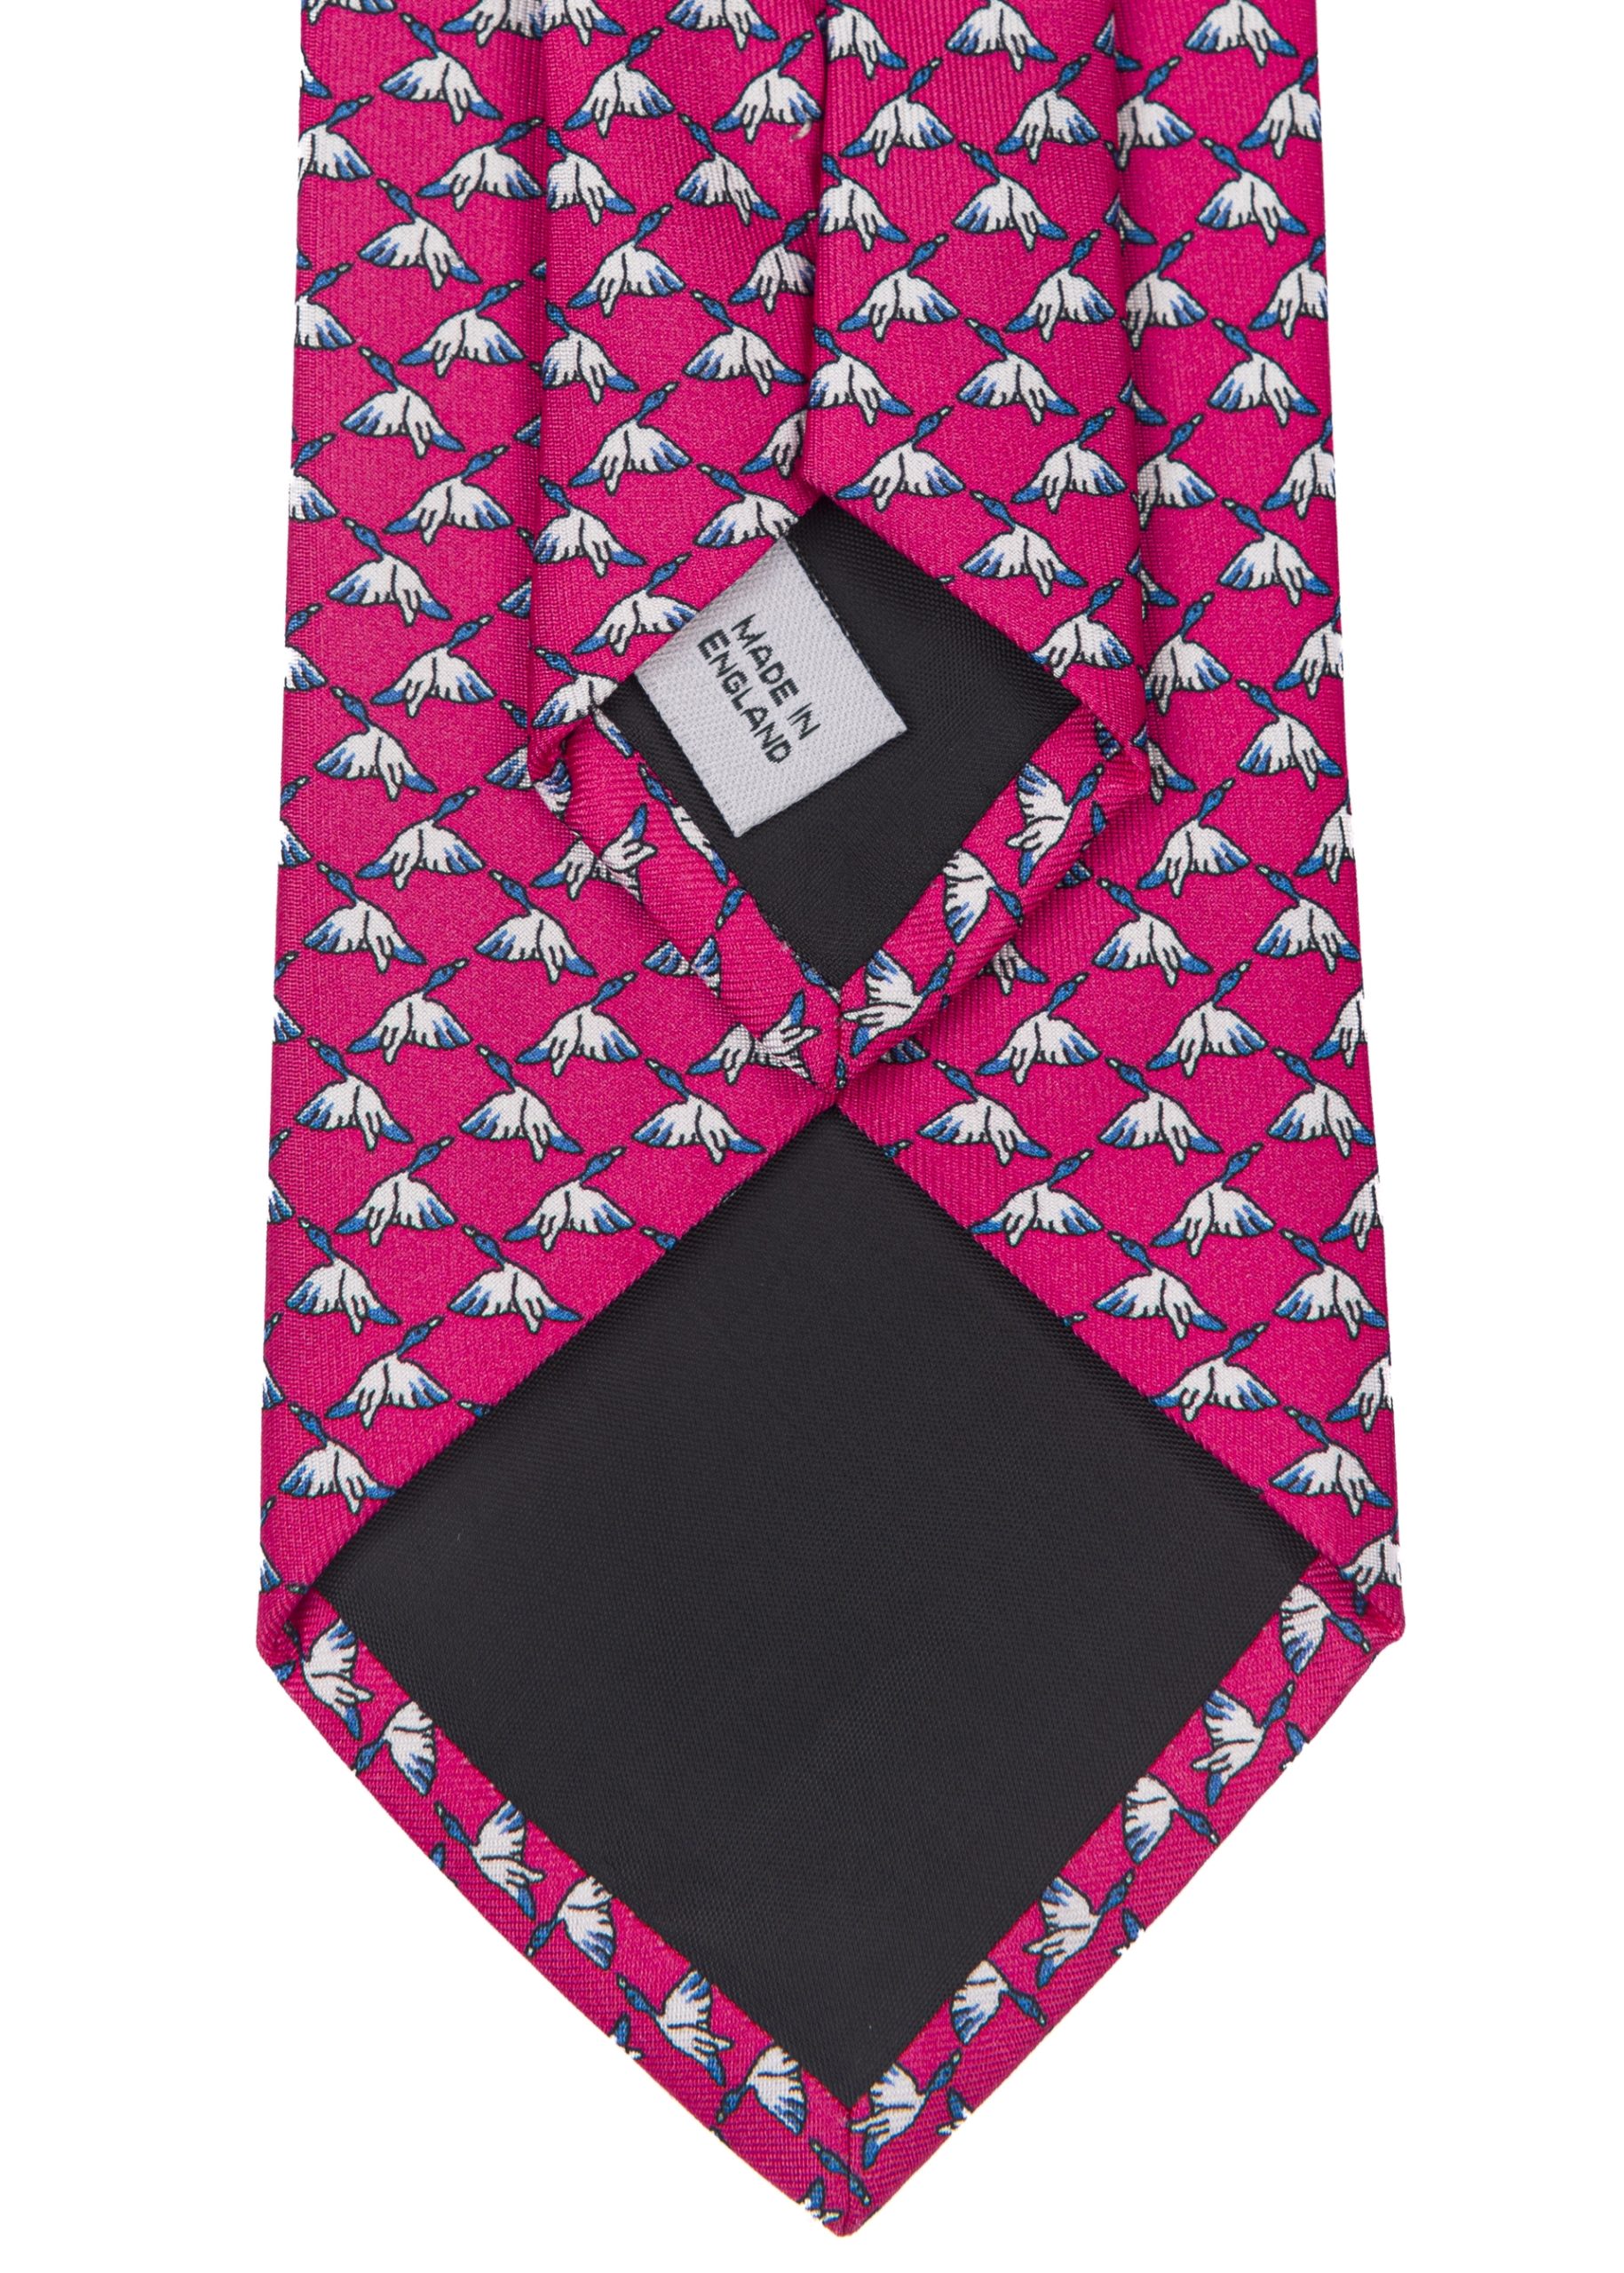 Men’s flying duck tie in a dark pink